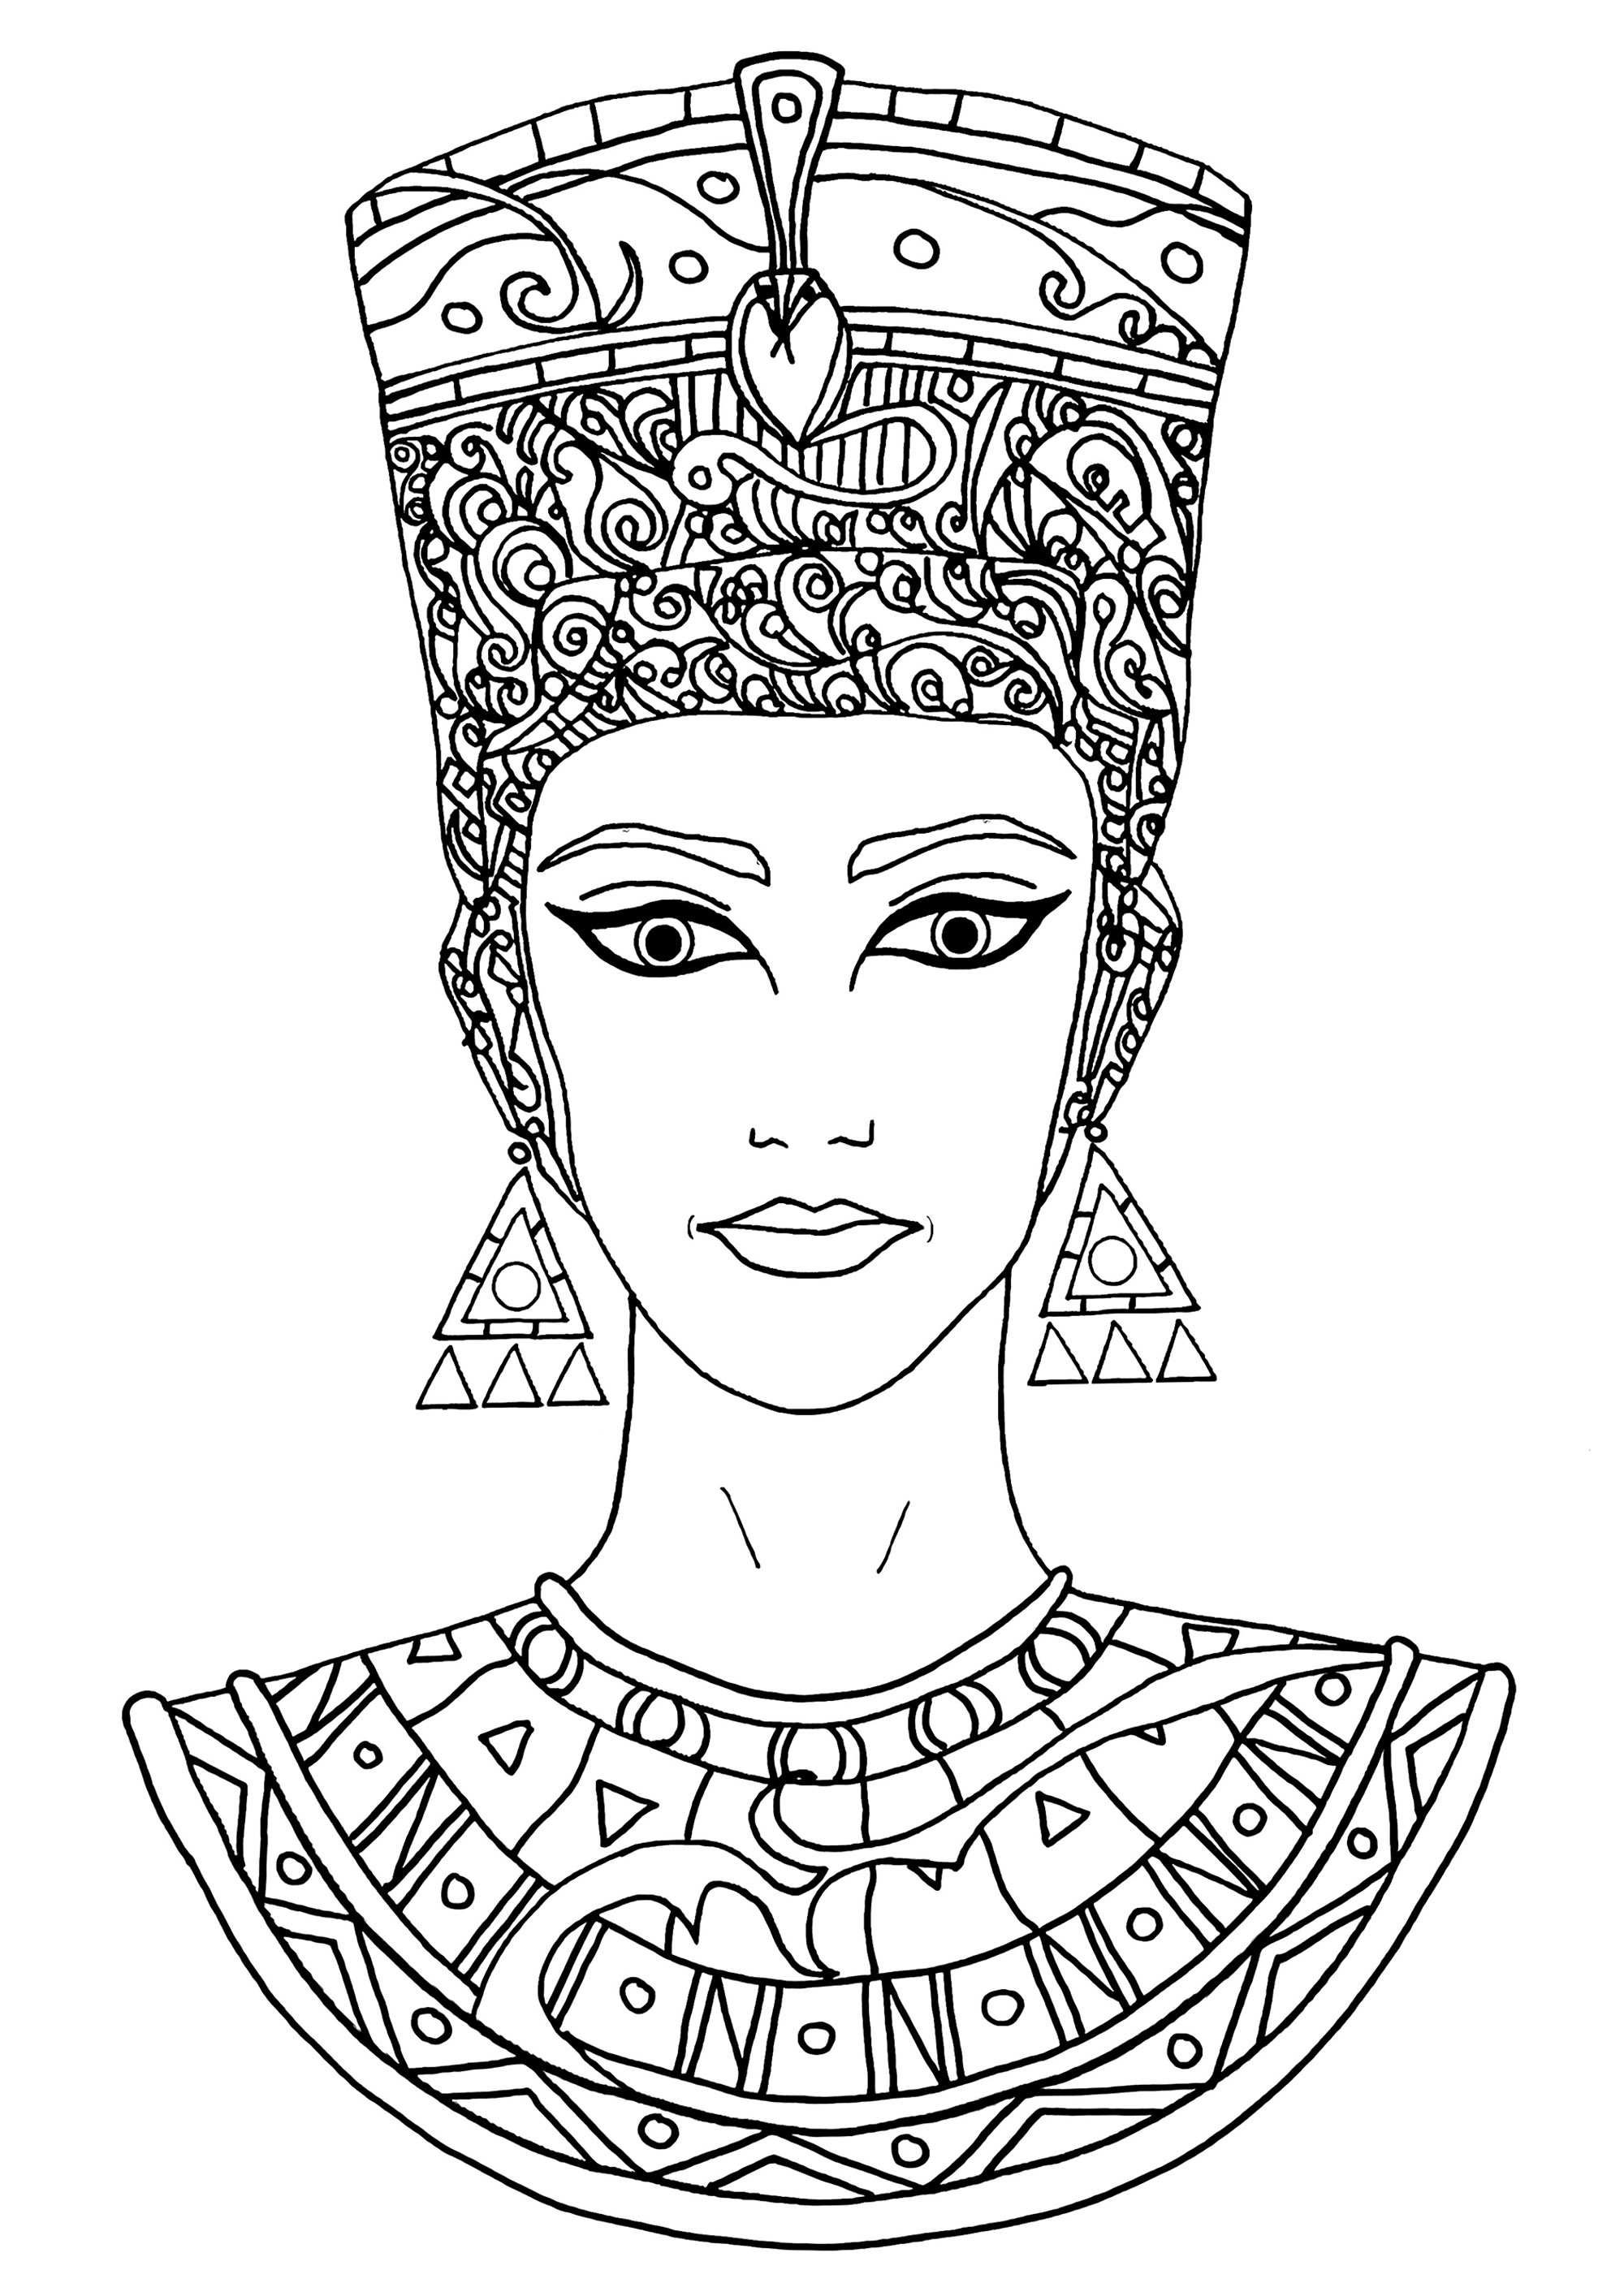 Bonito dibujo de Nefertiti para colorear. Nefertiti fue una reina muy importante, poderosa y respetada en Egipto hace mucho tiempo. Era la esposa del rey Akenatón y juntos gobernaron el país y ayudaron a cambiar las creencias religiosas de Egipto. Nefertiti era muy bella y se ha encontrado una estatua suya muy famosa hoy en día.